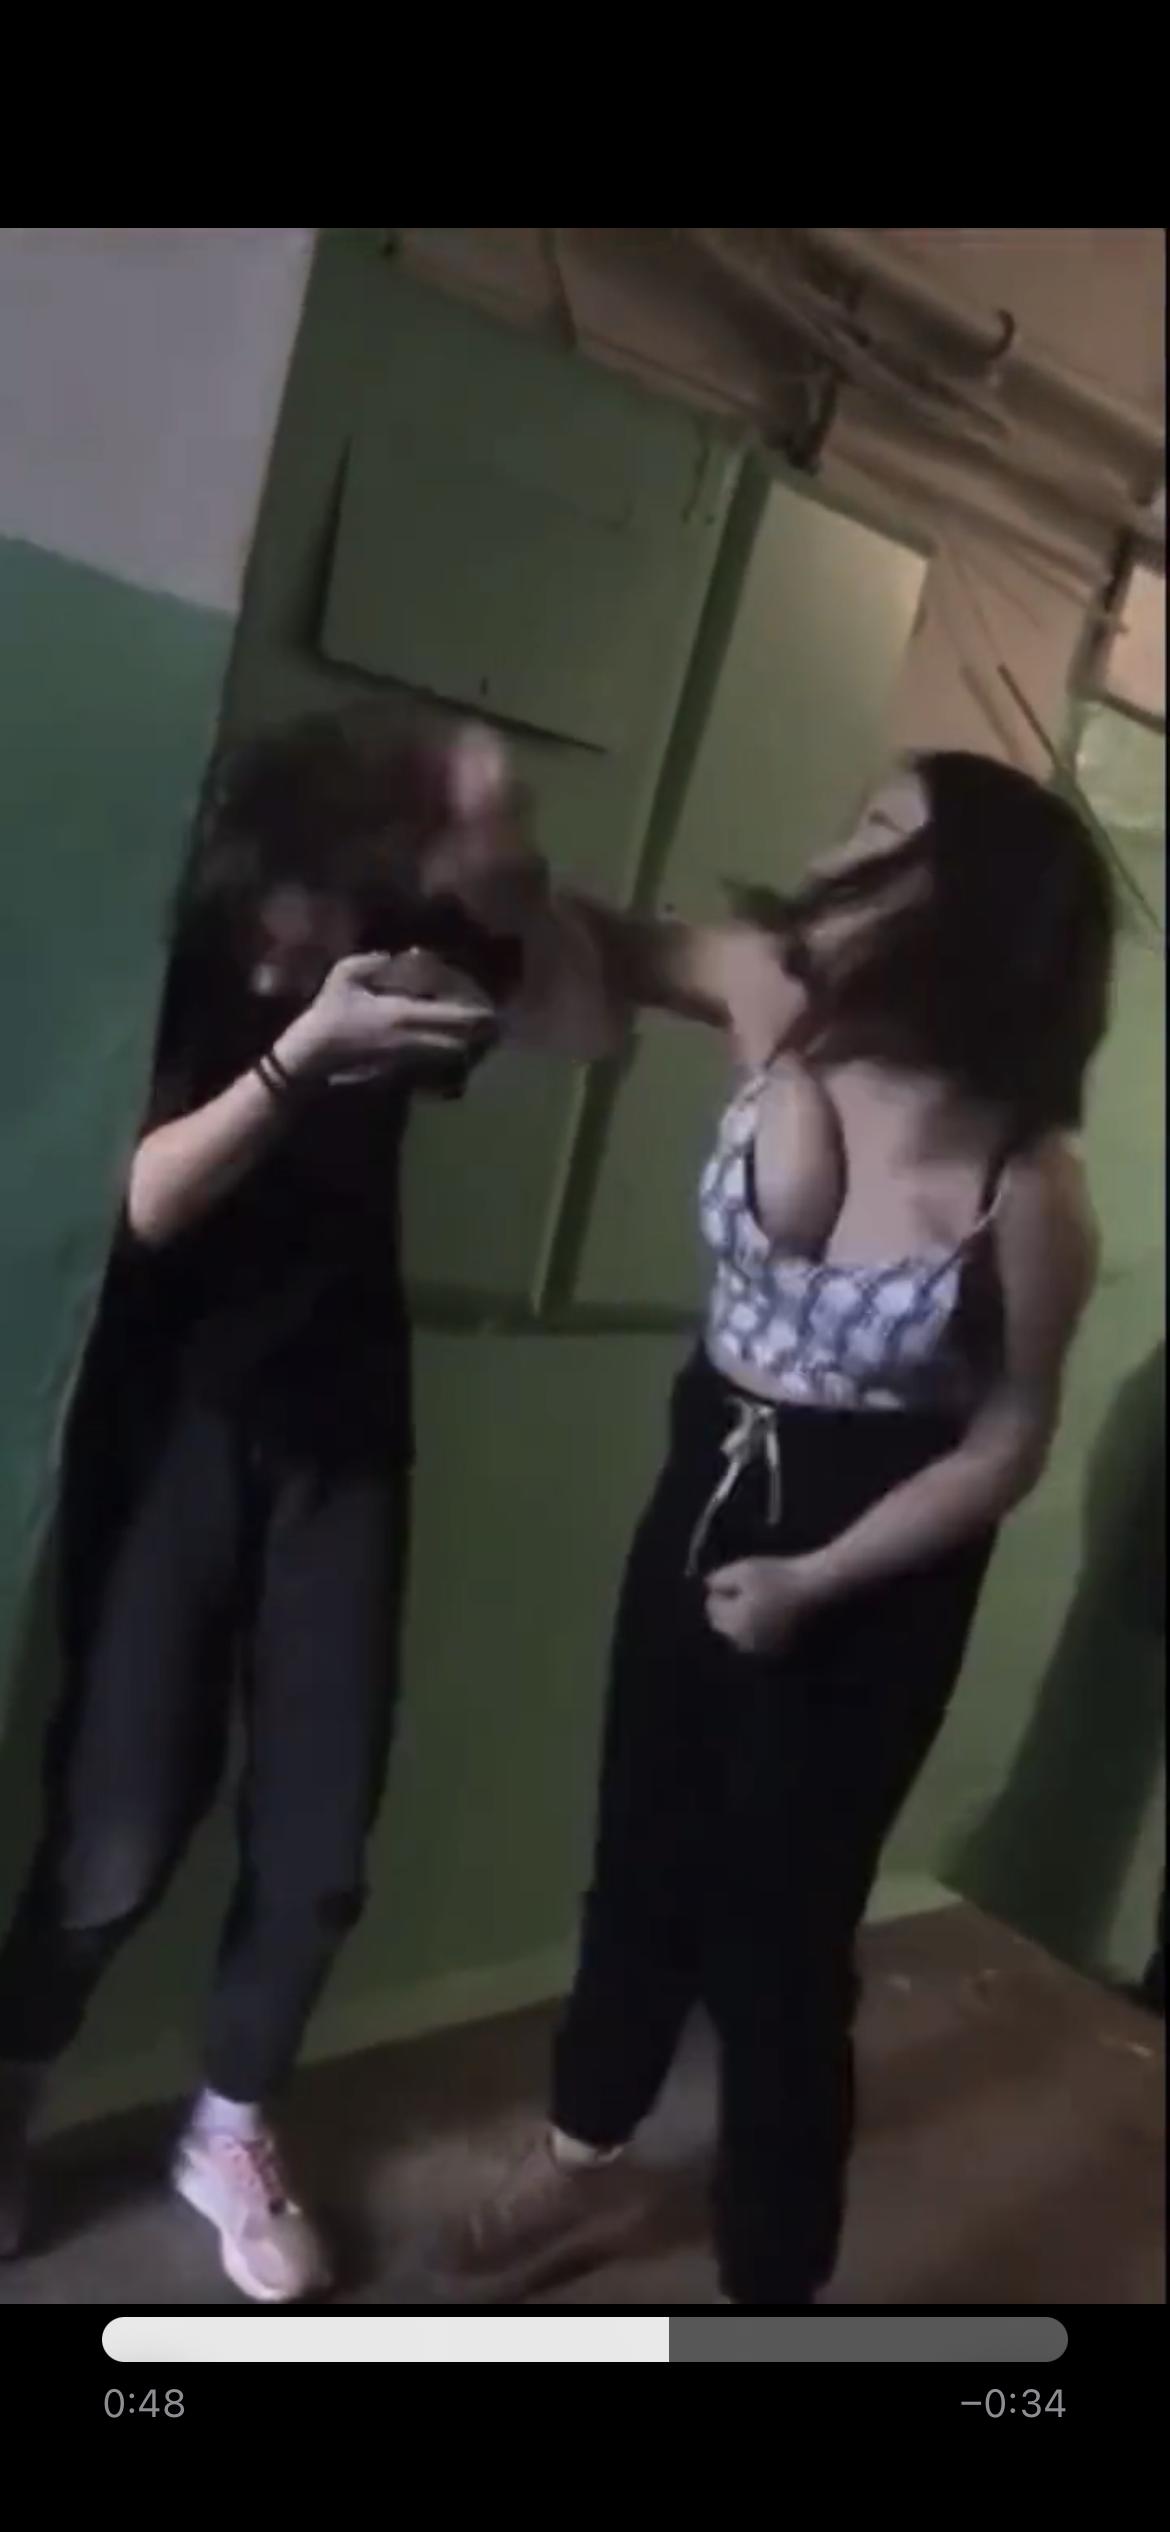 【動画】ロシア人巨乳JKが陰キャJKをボコボコにする動画